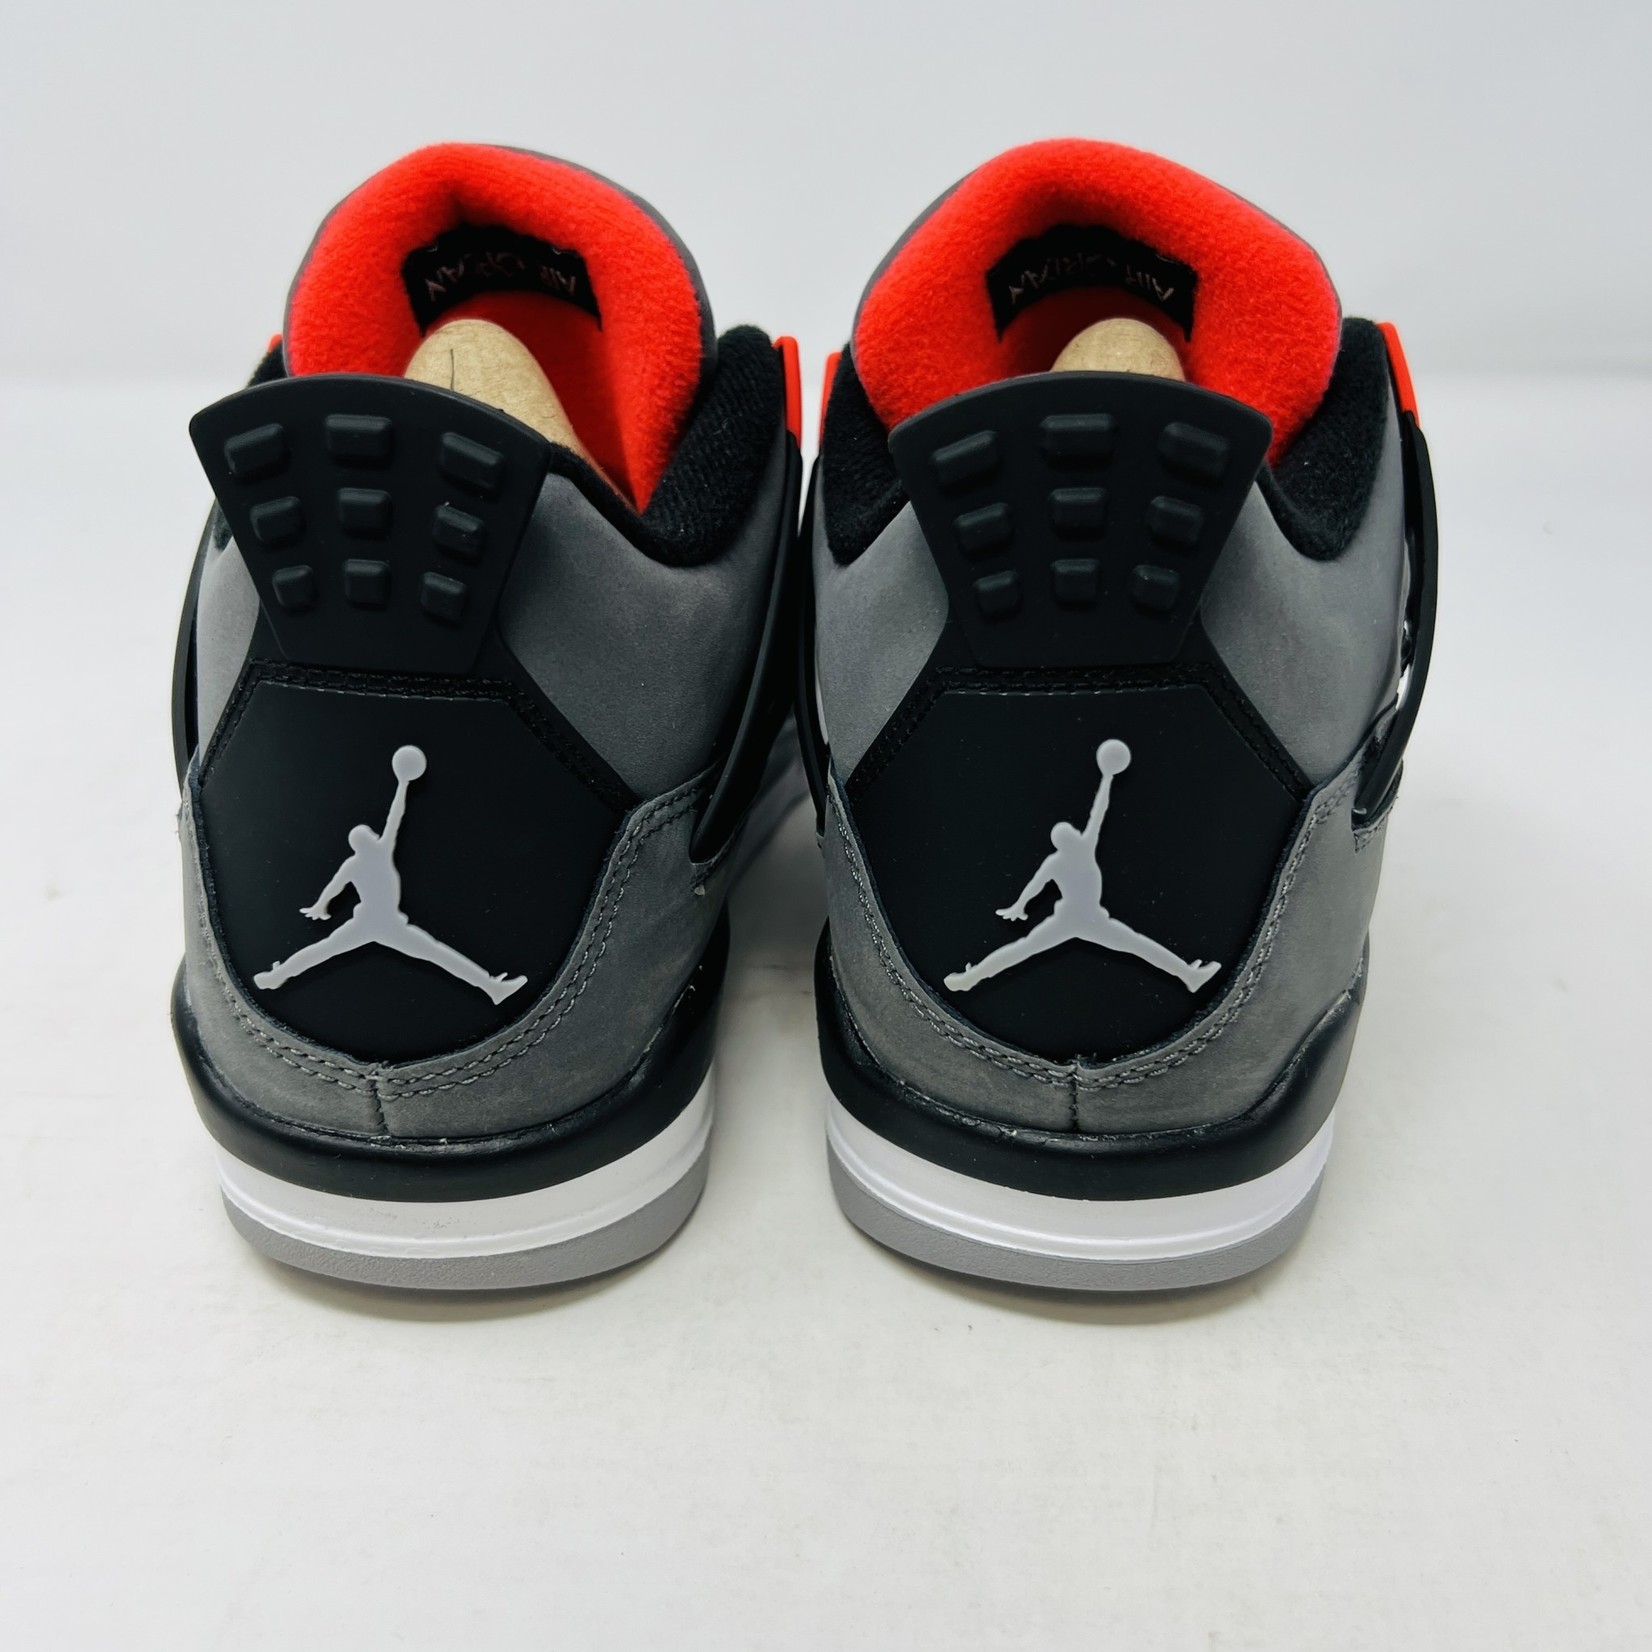 Jordan Jordan 4 Infrared